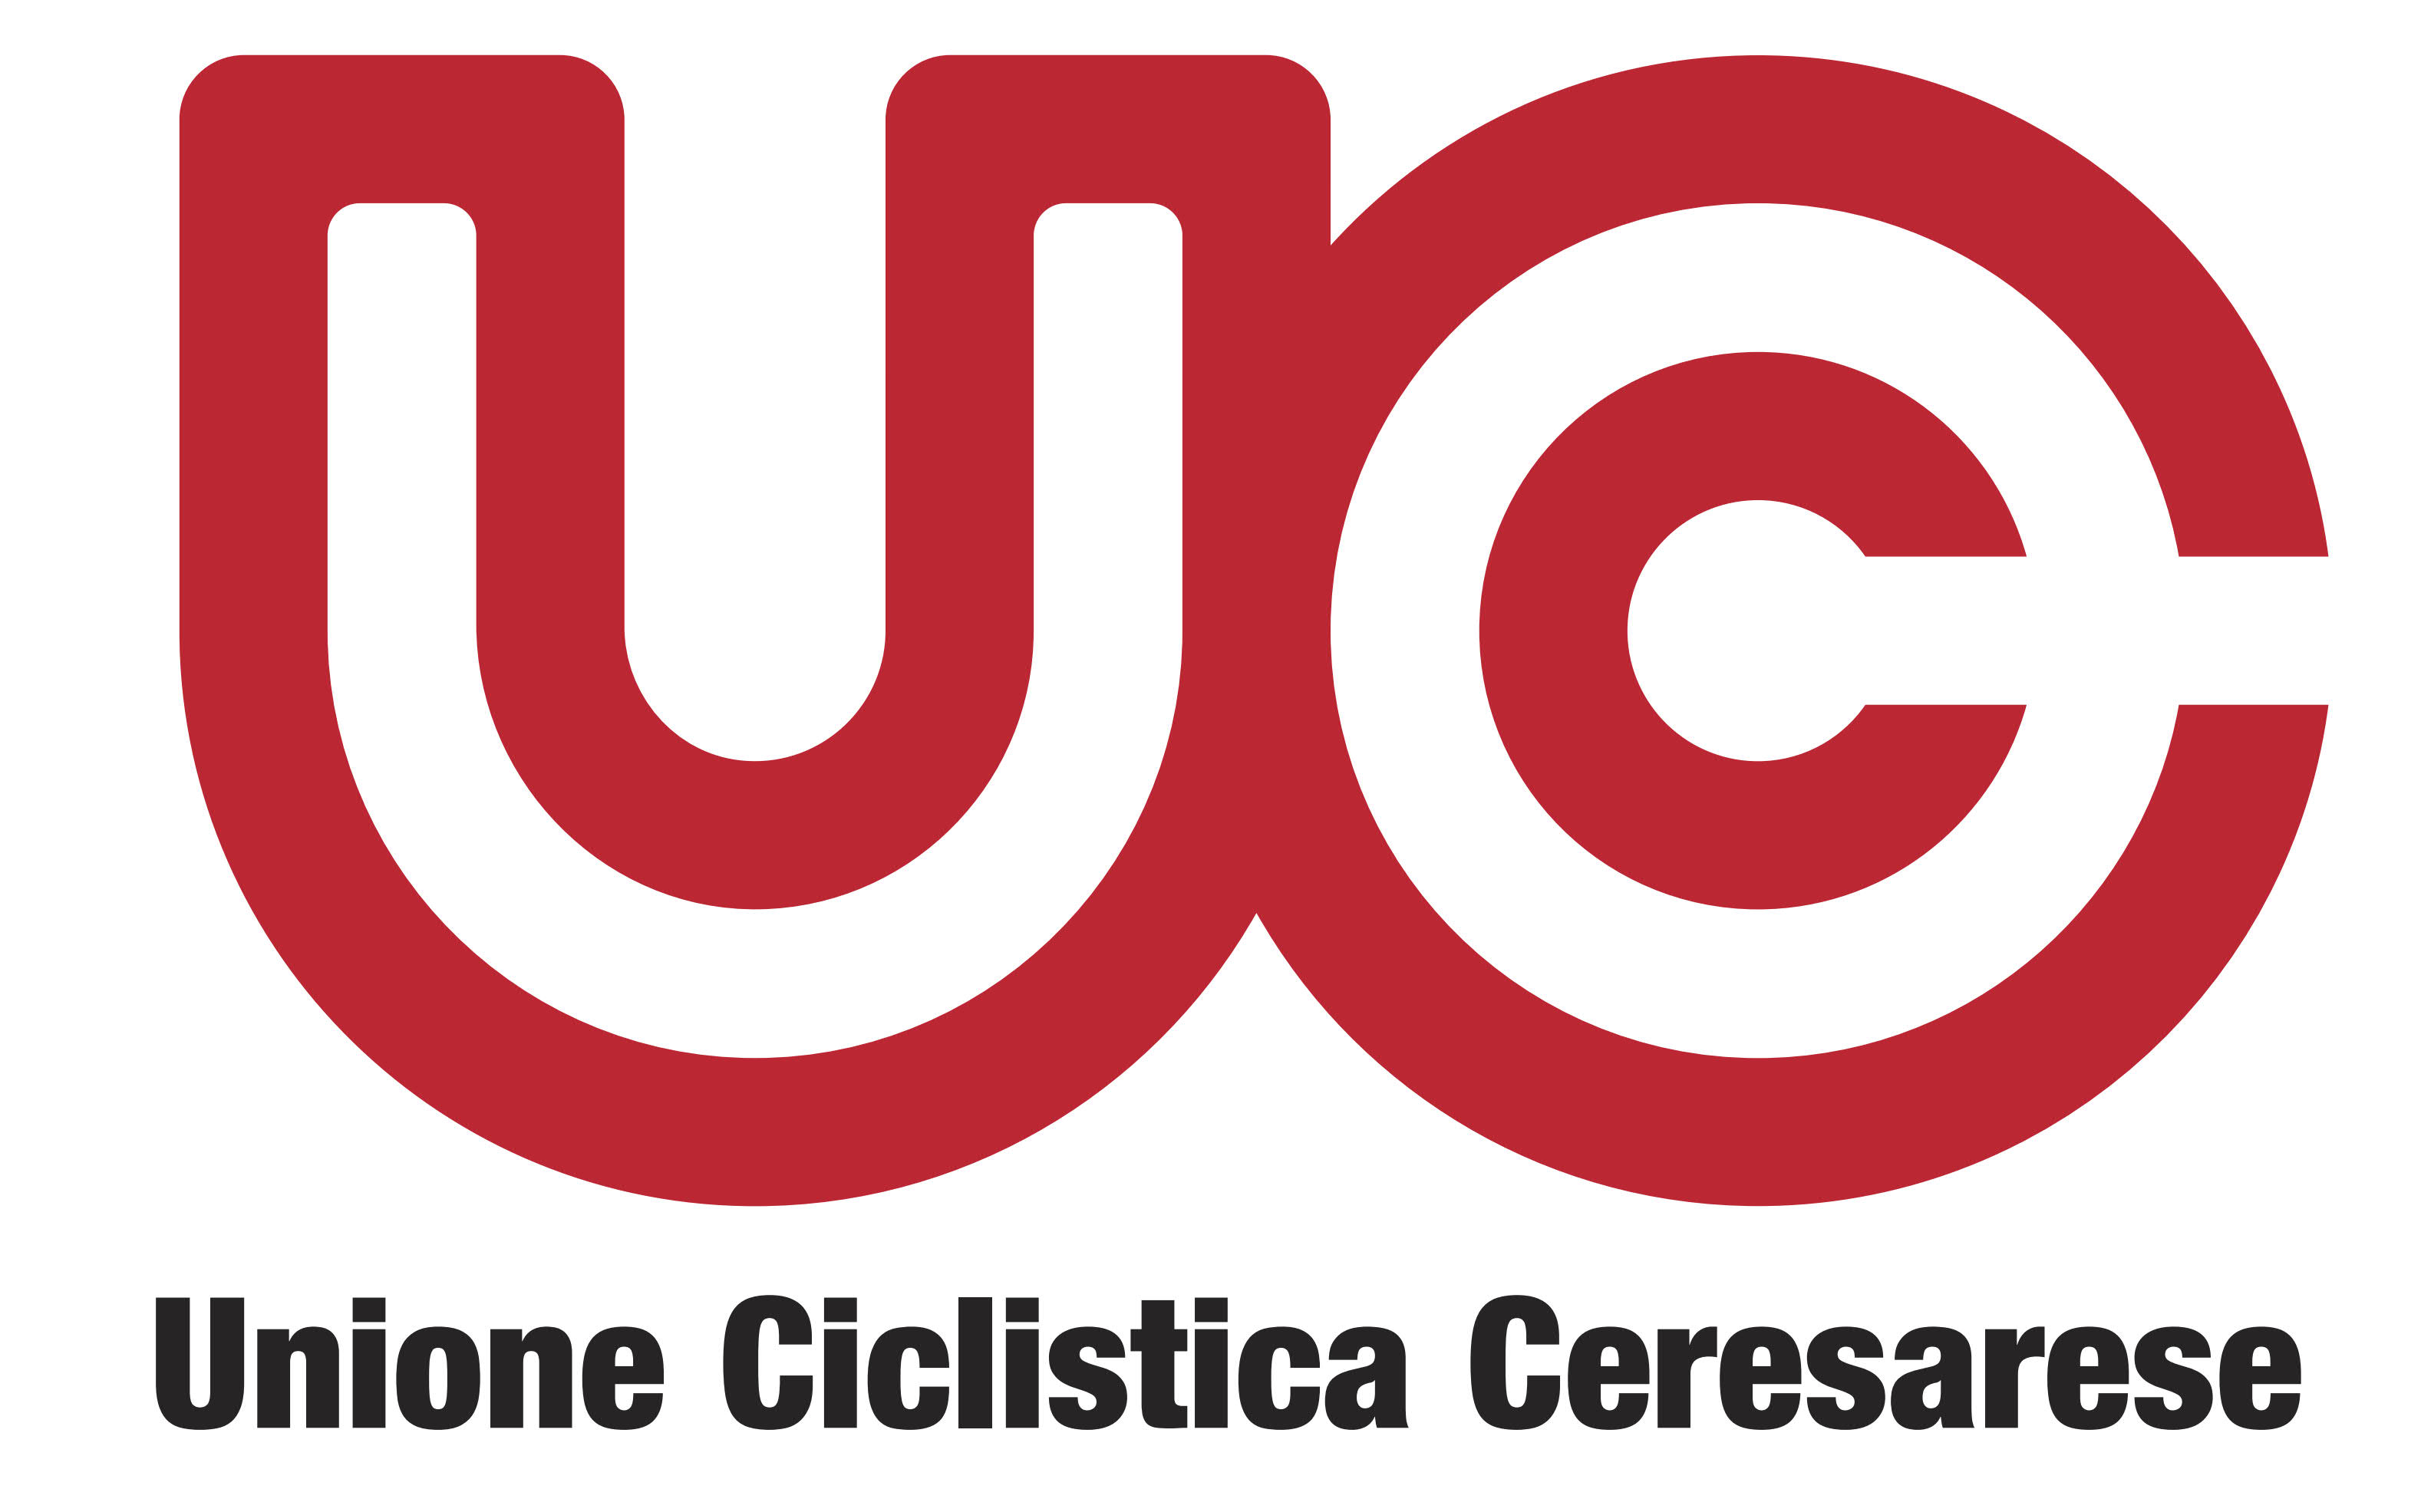 Unione Ciclistica Ceresarese